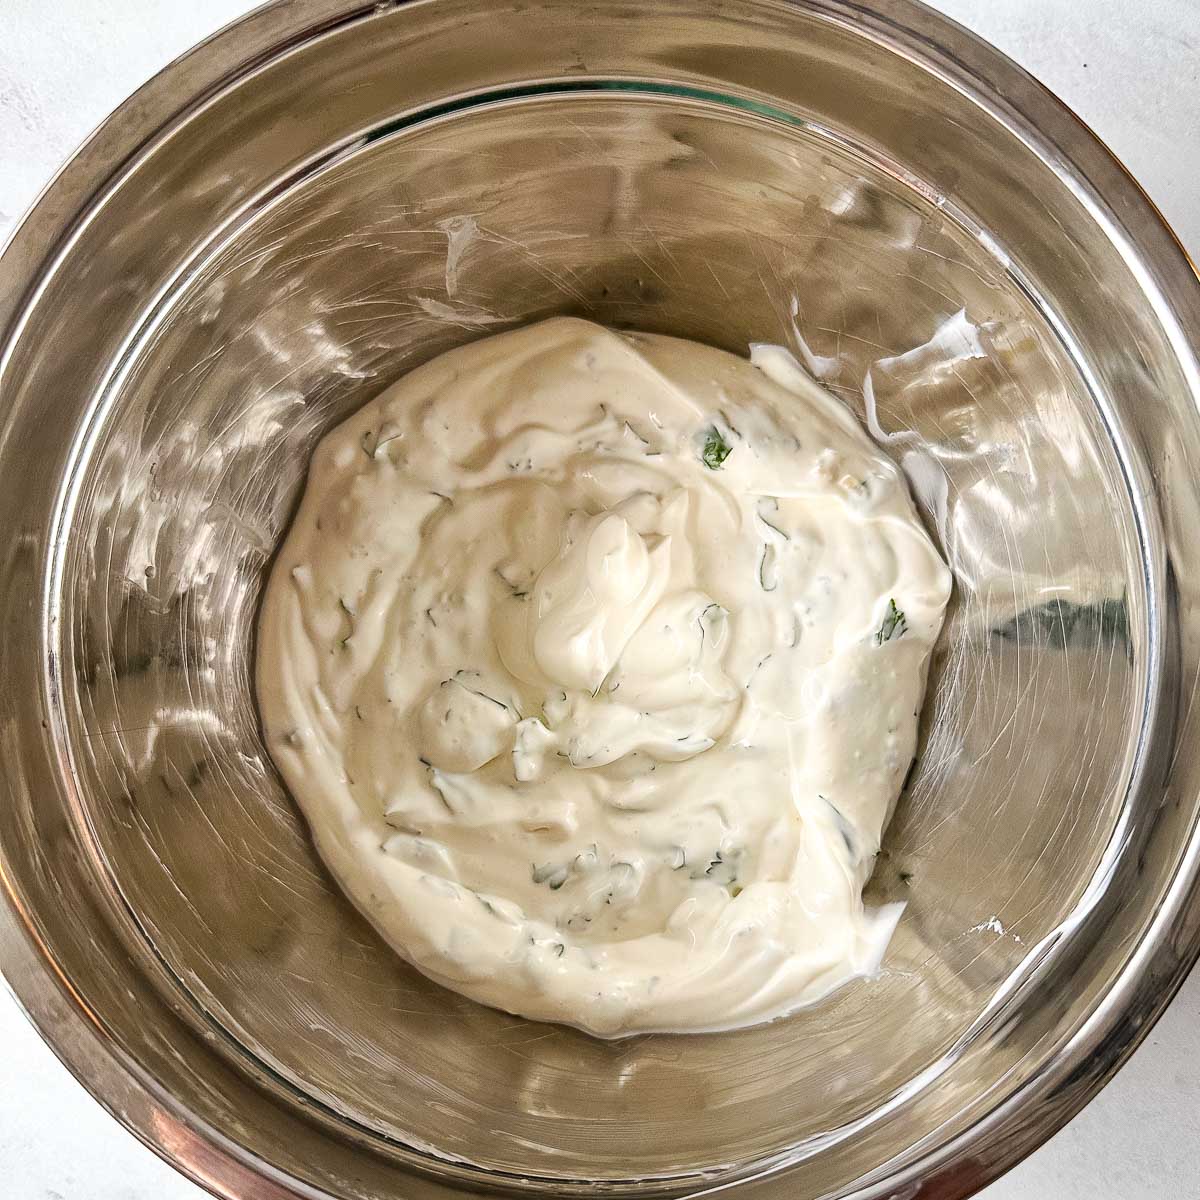 Cilantro lime crema in a silver bowl.